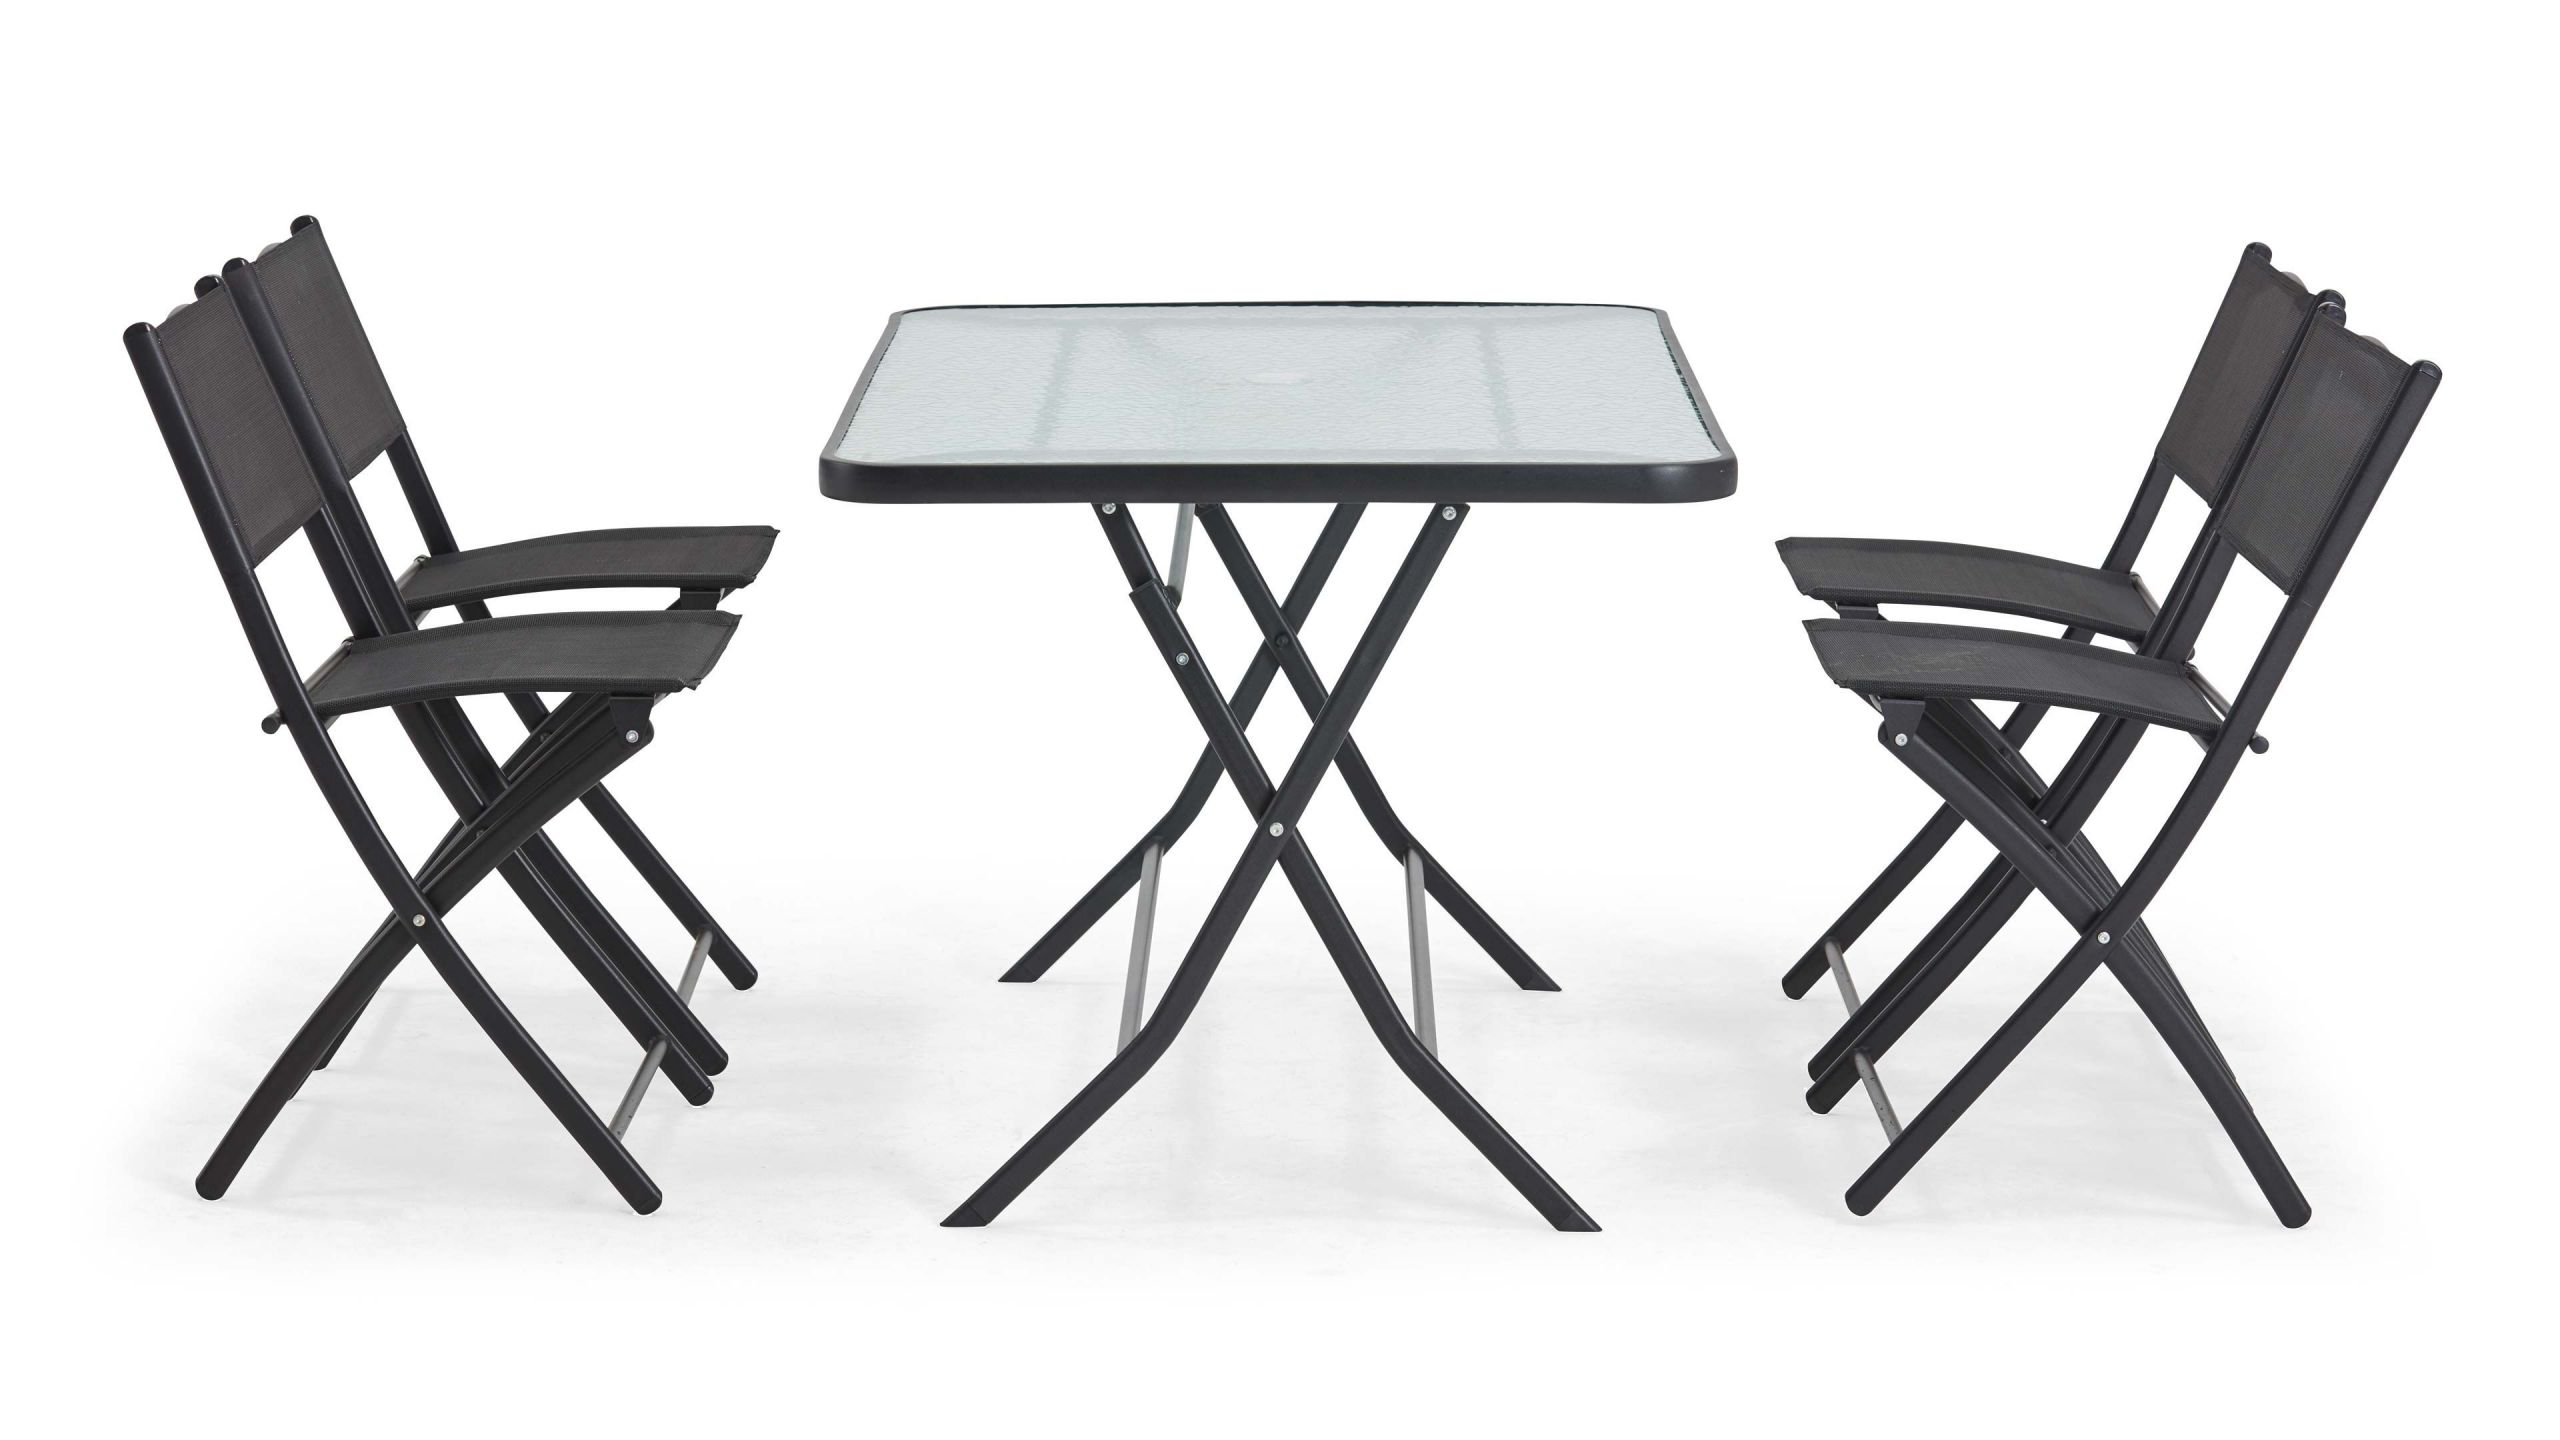 Table Salon Pliante Génial Table Et Chaise Pliante Table Et Chaise Pliante with Table